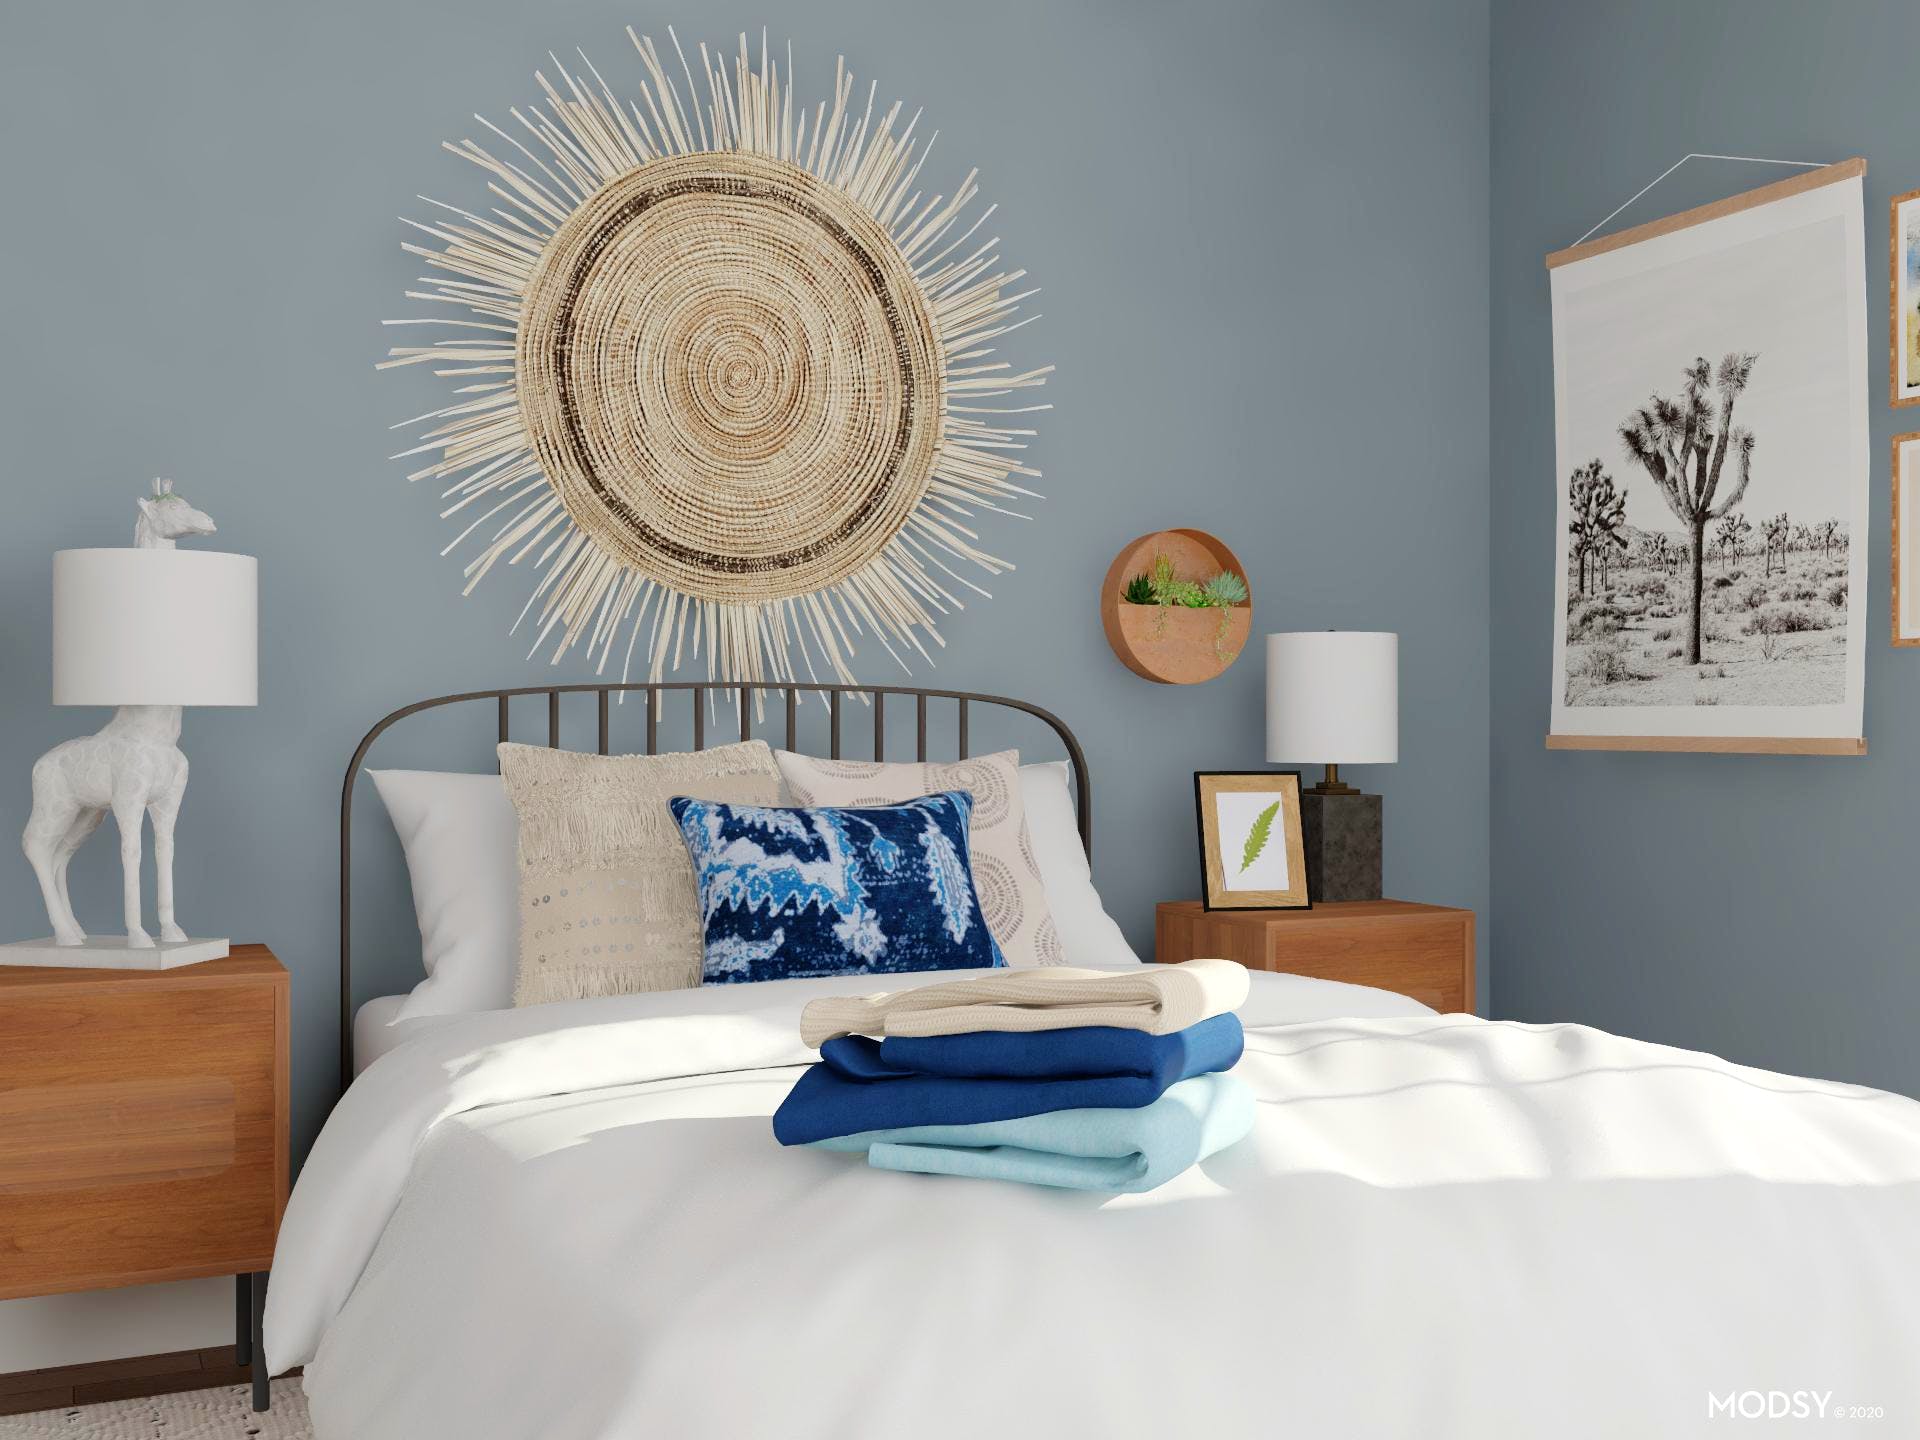 Điểm nhấn đầu giường với tác phẩm nghệ thuật hình mặt trời được làm từ cói giúp hút mắt người nhìn